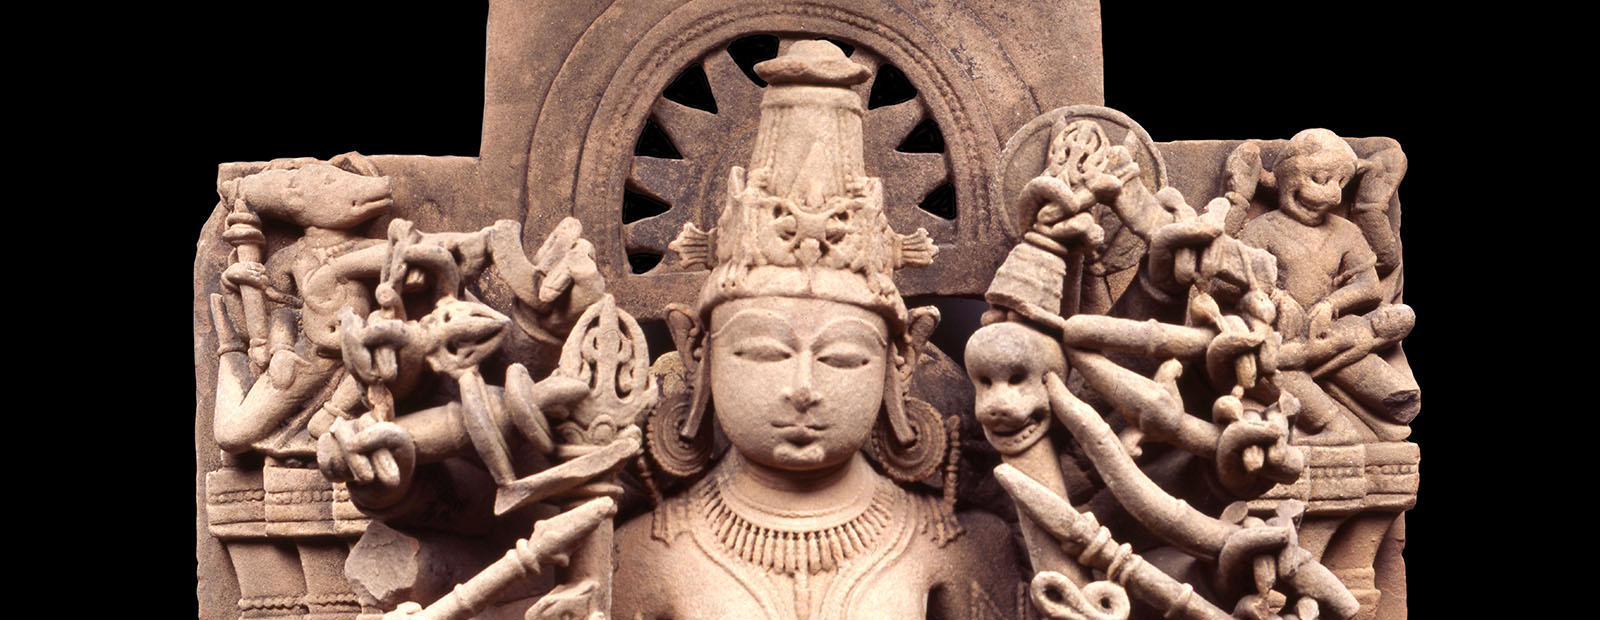 Vishnu sculpture